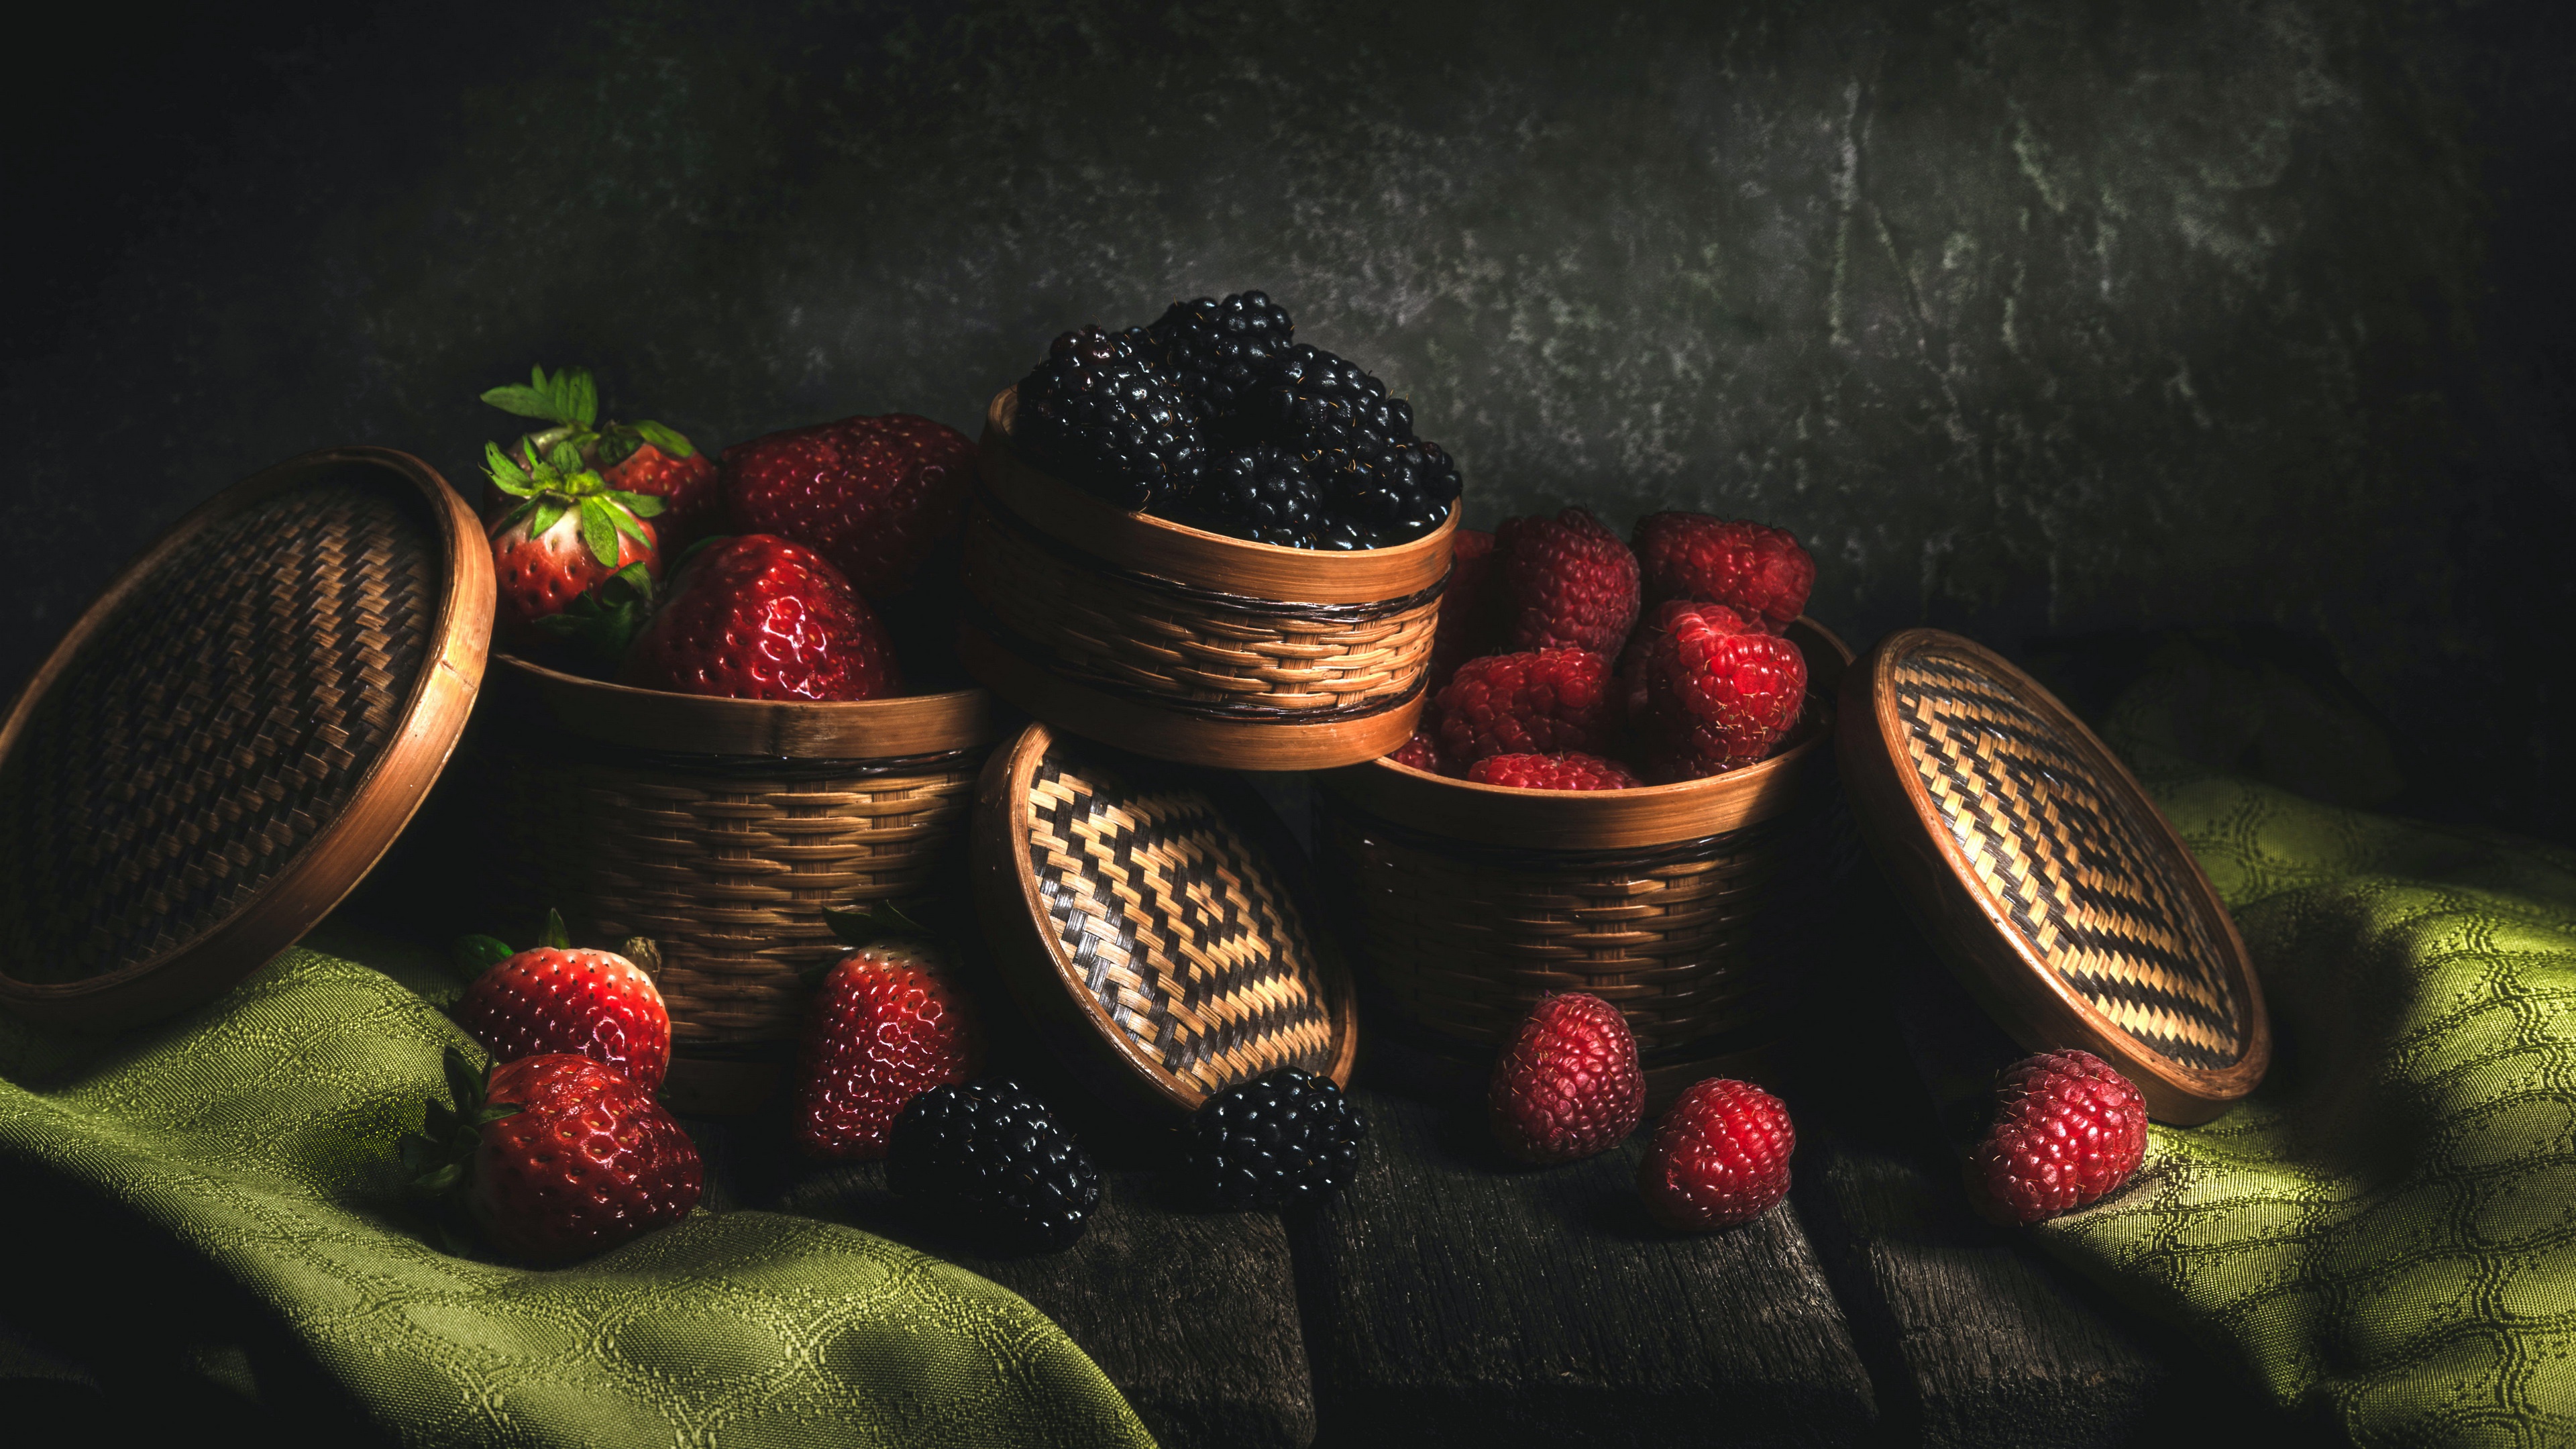 General 3840x2160 food still life fruit berries strawberries blackberries